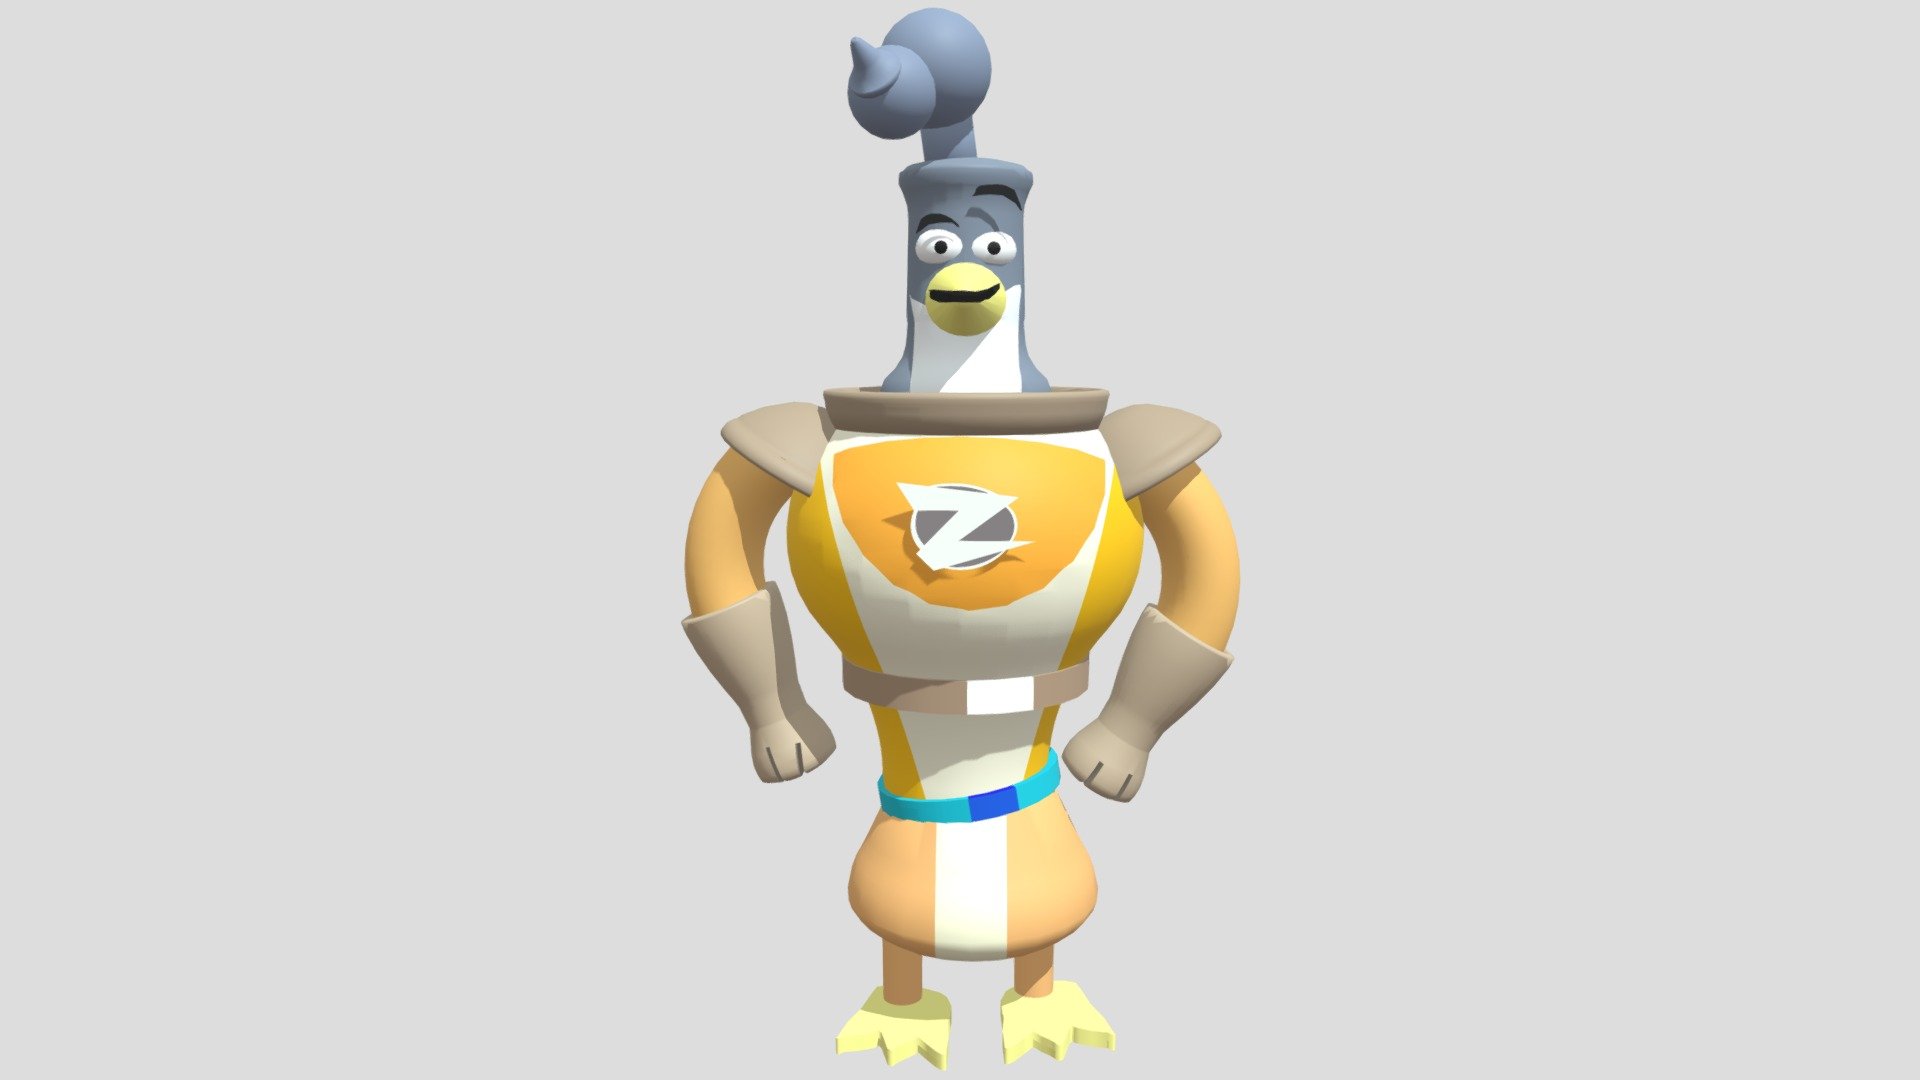 Zidgel (Cartoon-style remastered) from 321-Penguins 3d model